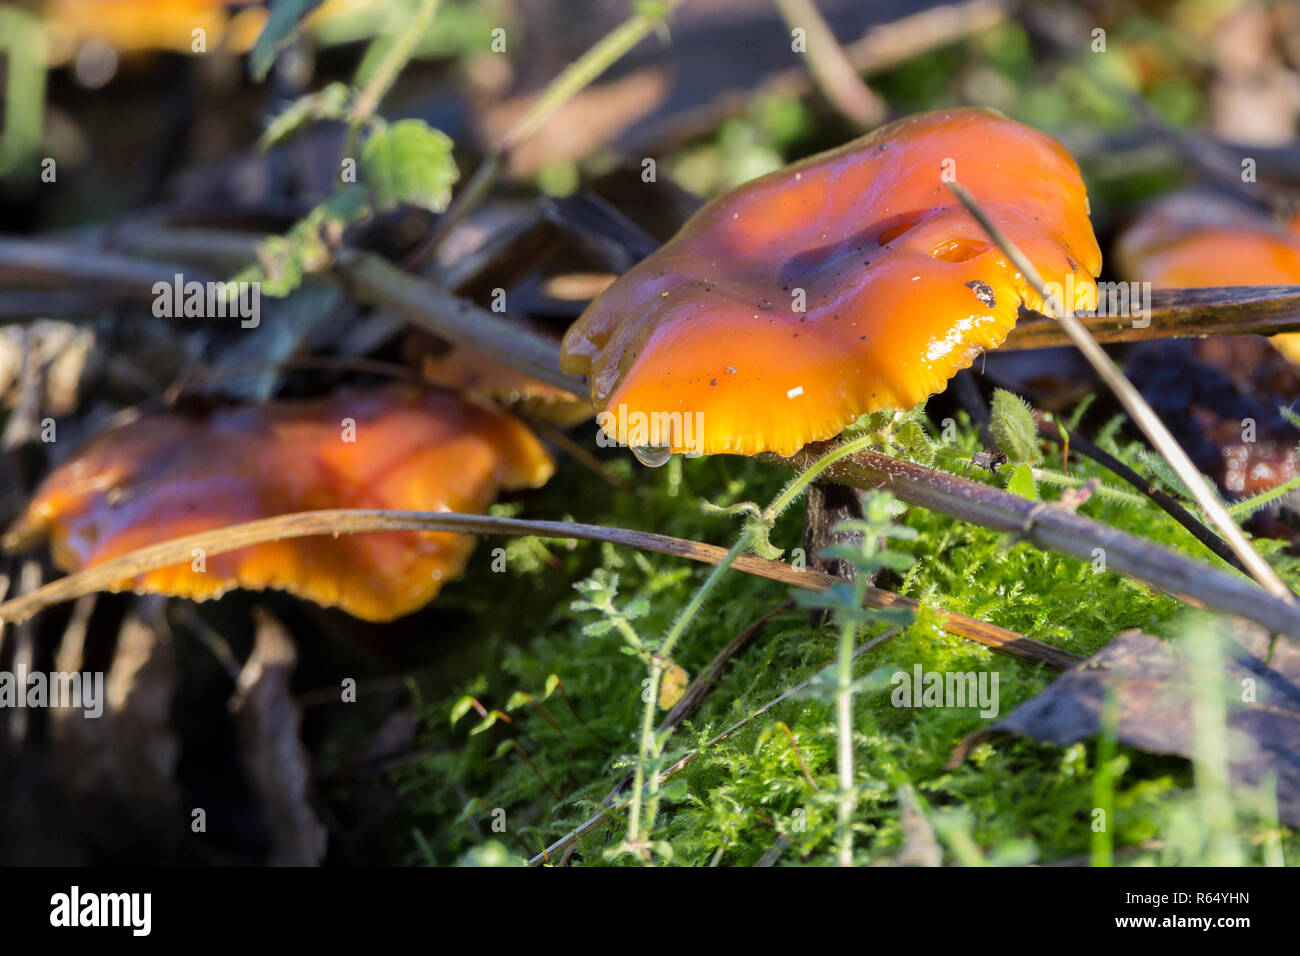 Funghi giallo arancione in formato paesaggio grande lucido sguardo bagnato jelly tipo tappi sul vecchio legno morto forest floor radura. Diversi funghi sui muschi. Foto Stock